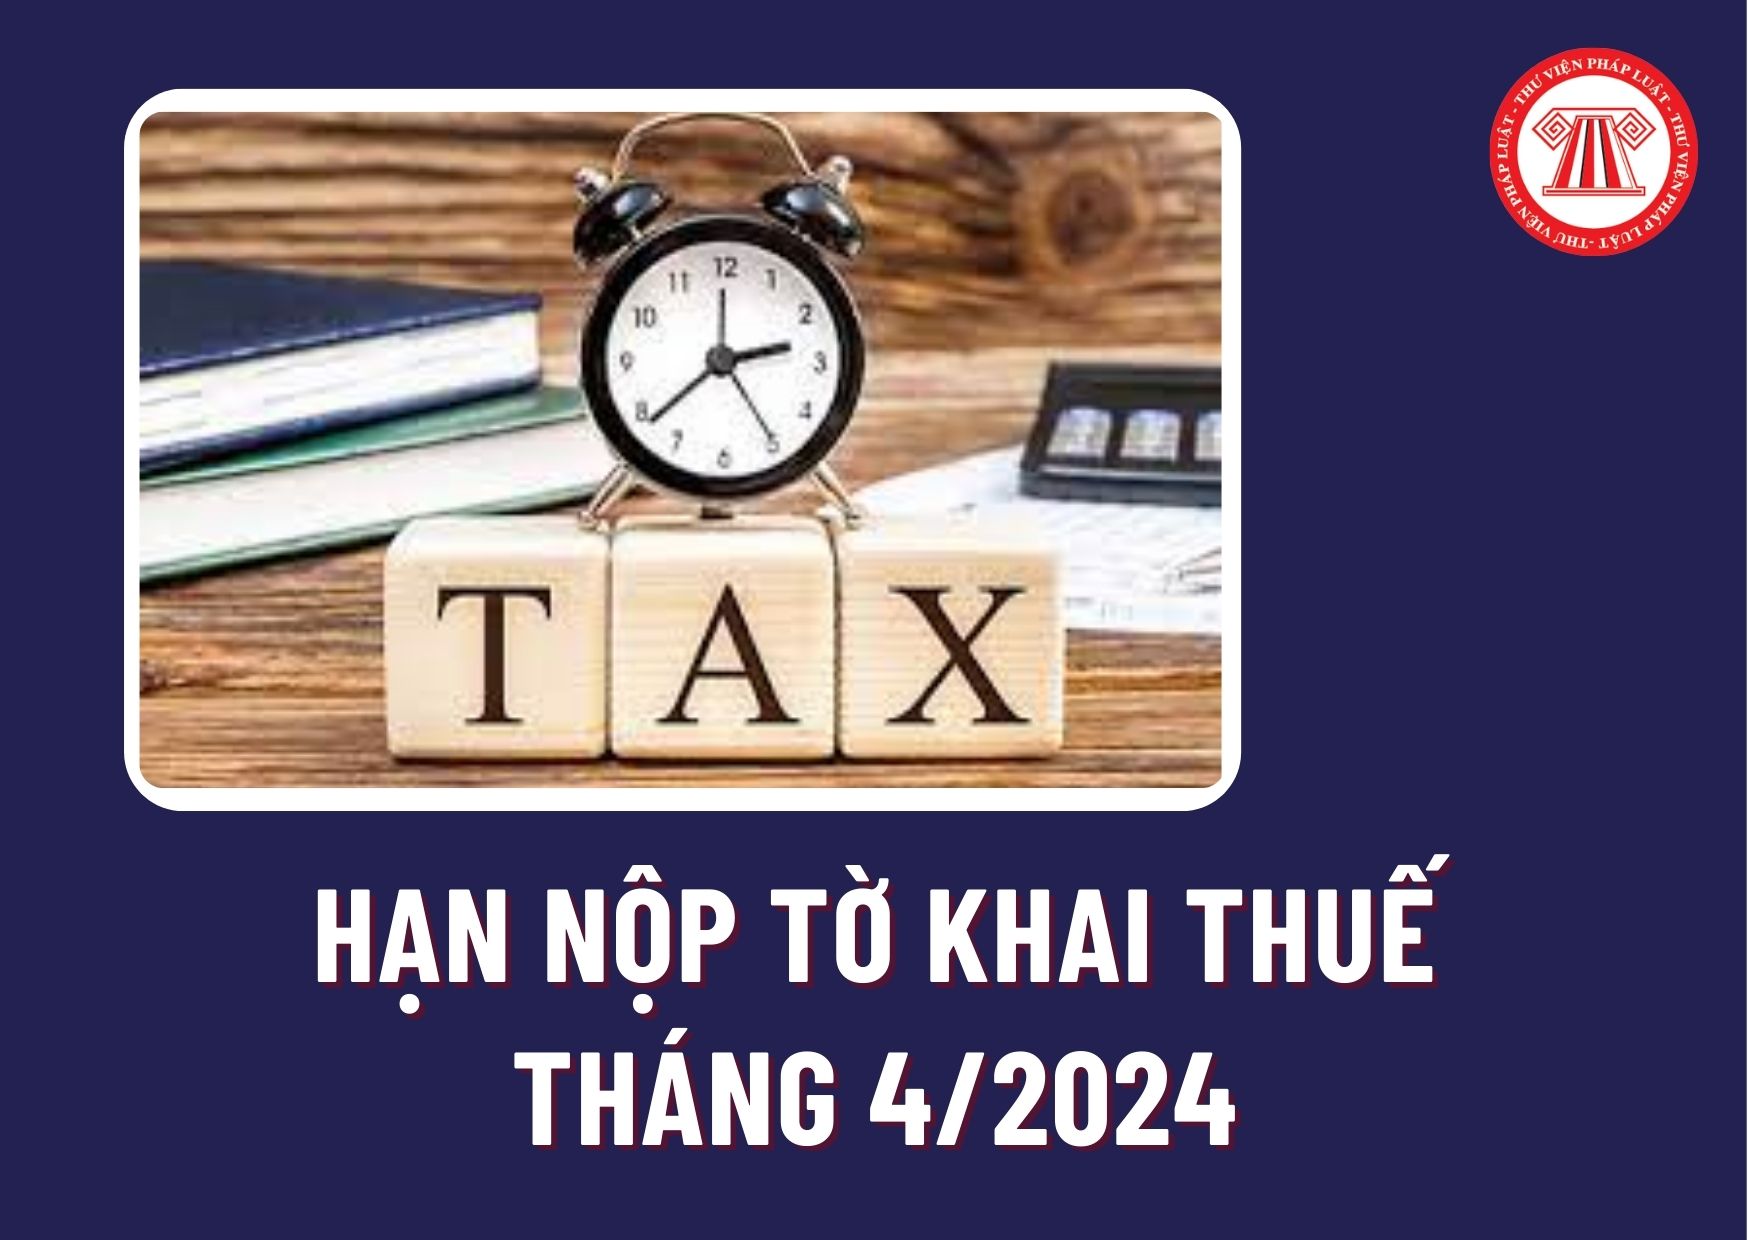 Hạn nộp tờ khai thuế tháng 4/2024 là khi nào? Chậm nộp tờ khai thuế 1 ngày có bị xử phạt hành chính không?